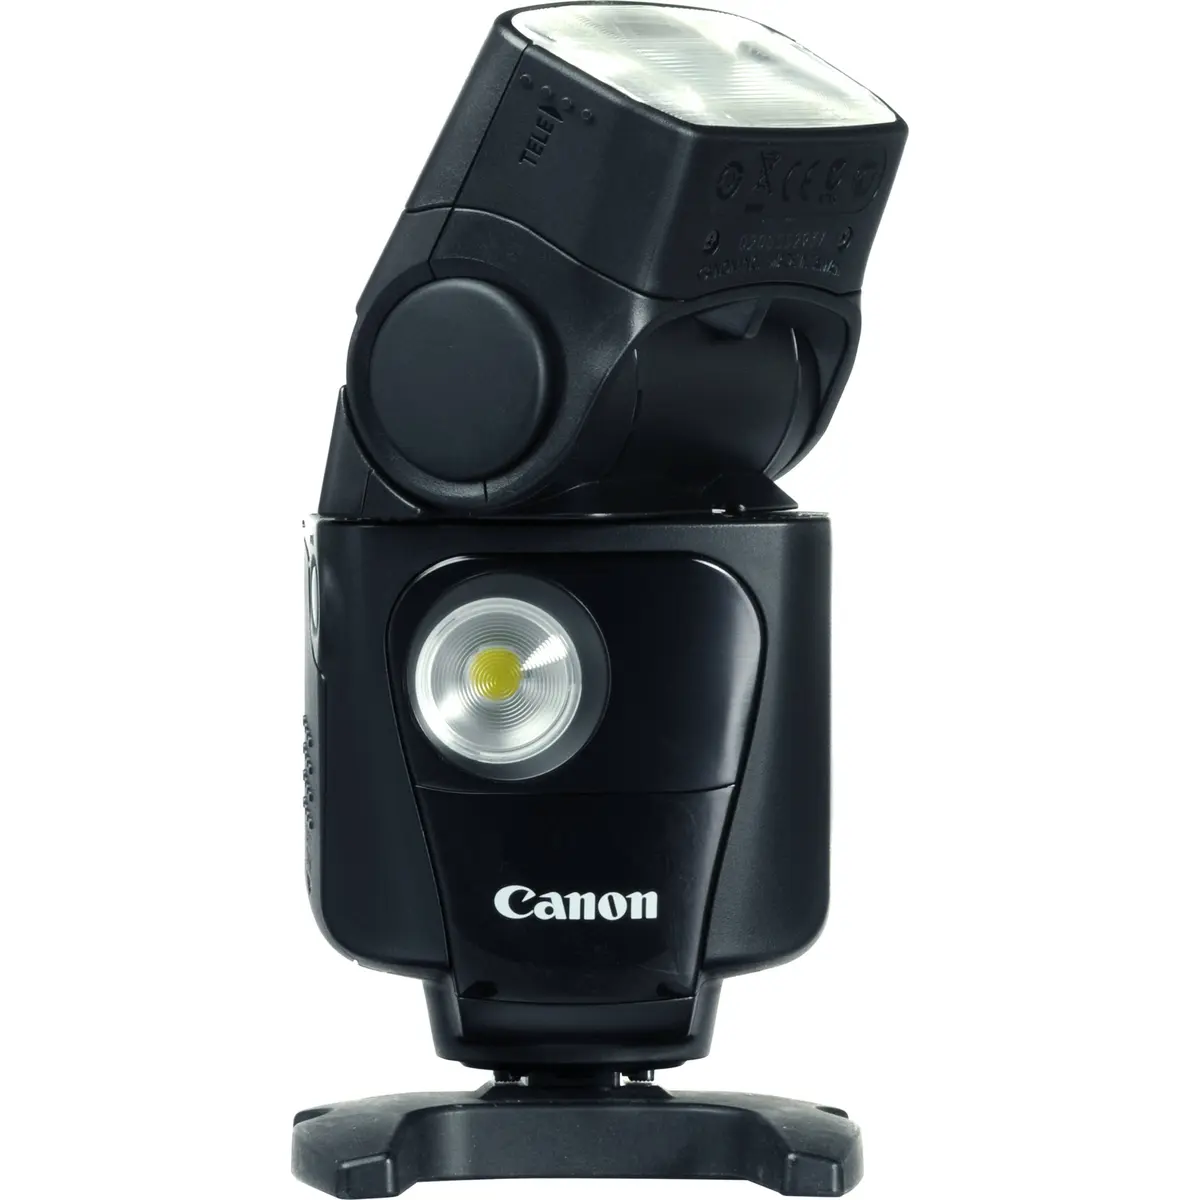 1. Canon Speedlite 320EX Flash